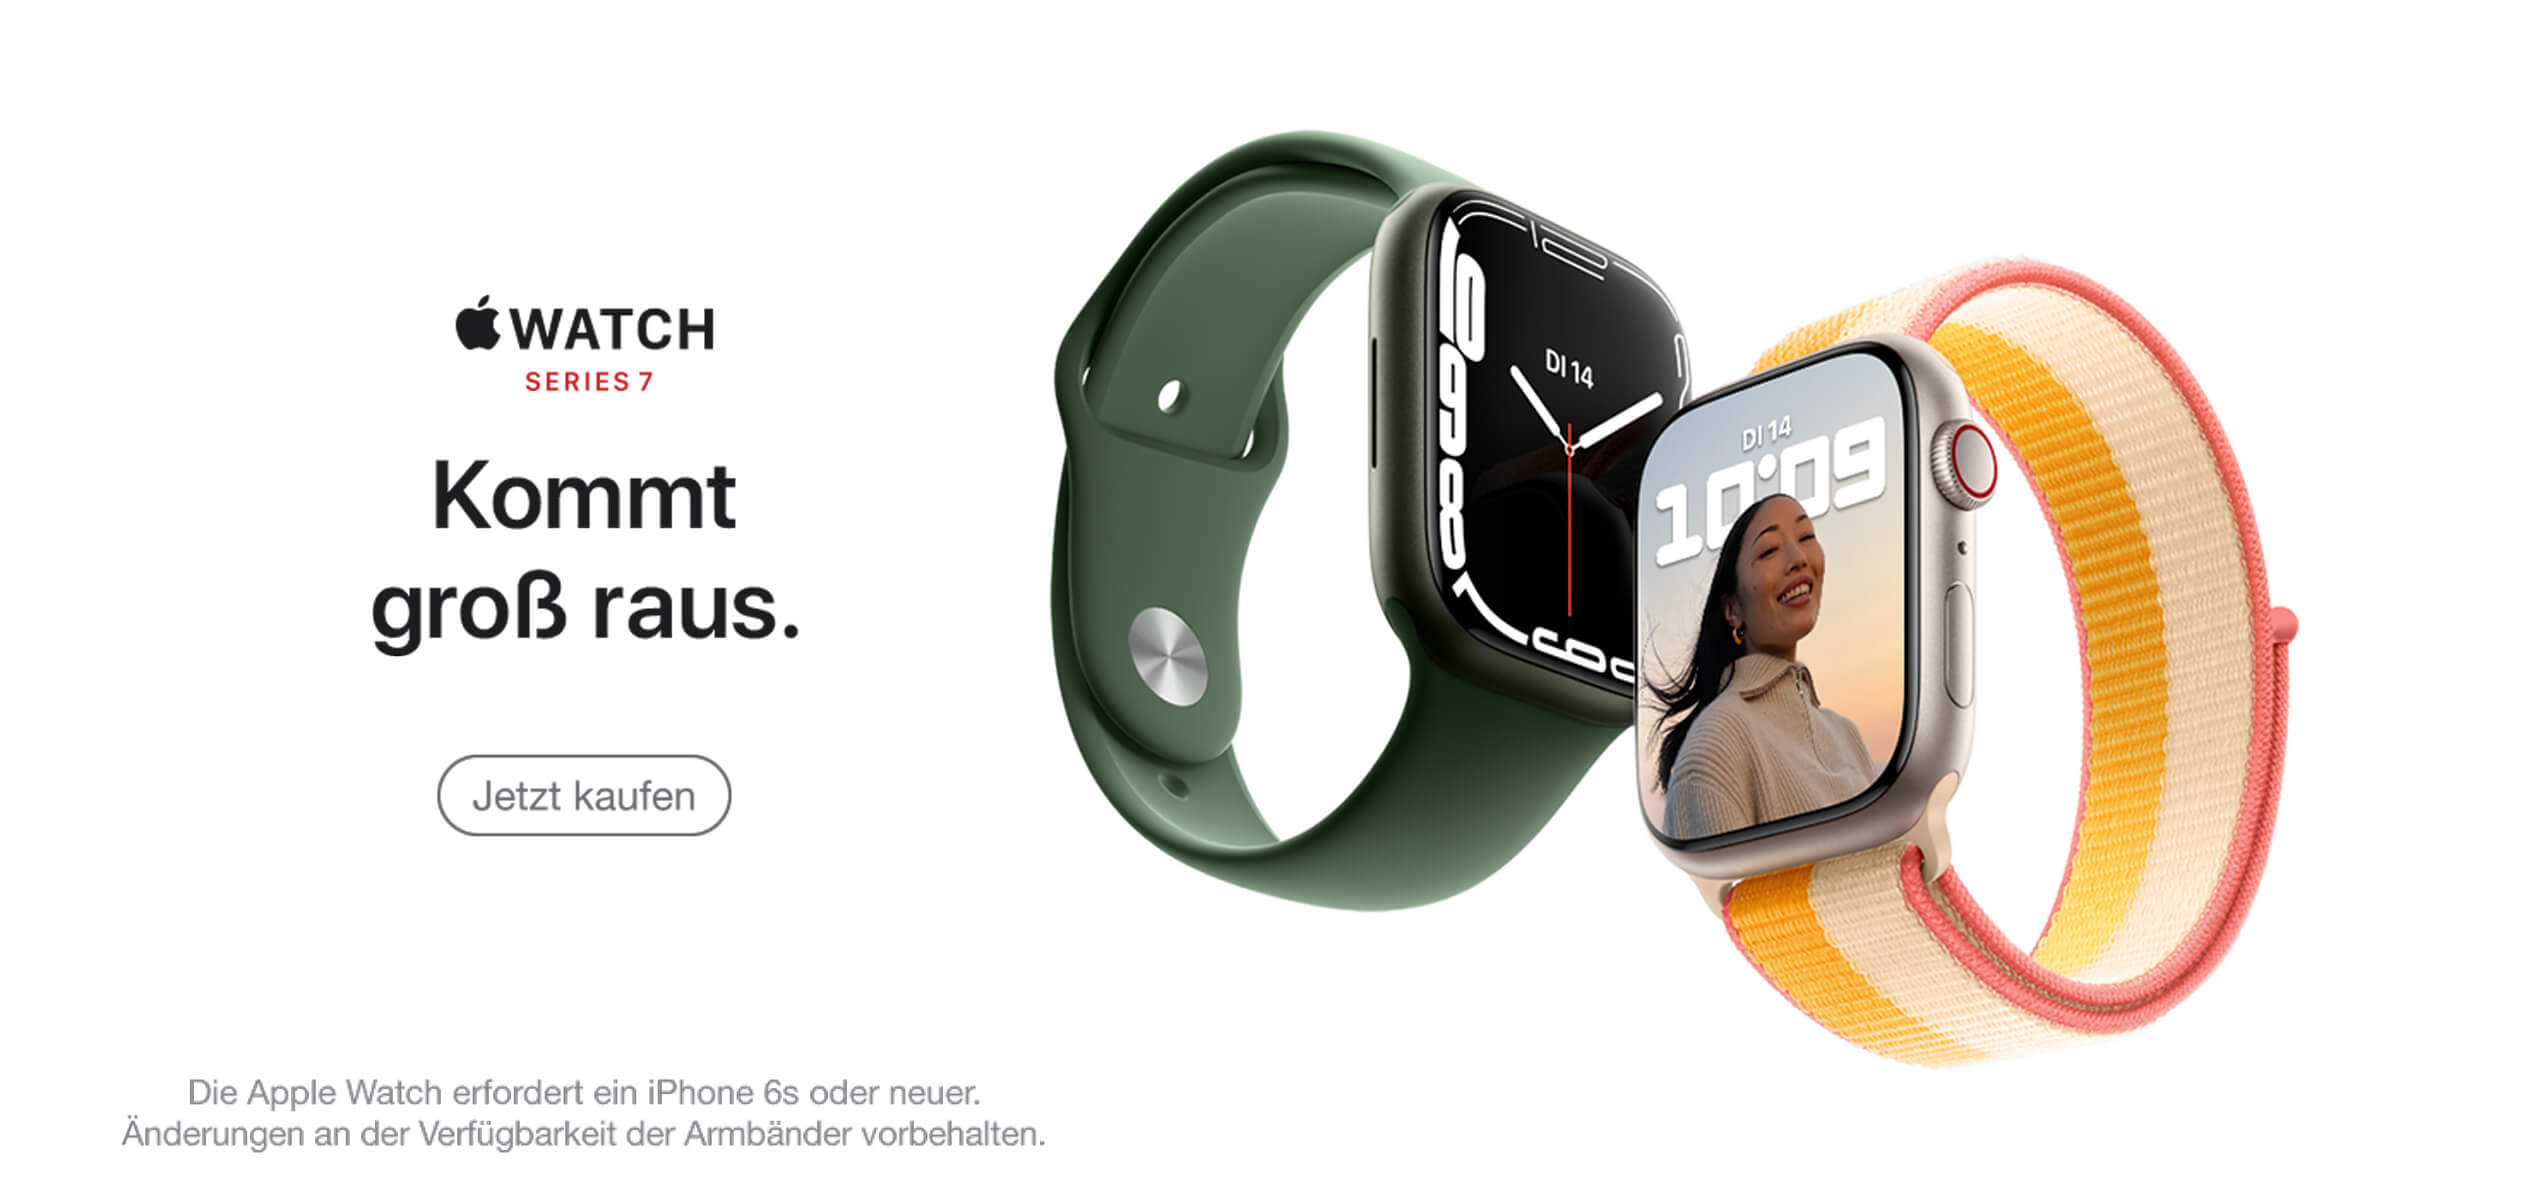 Apple Watch series 7, kommt groß raus